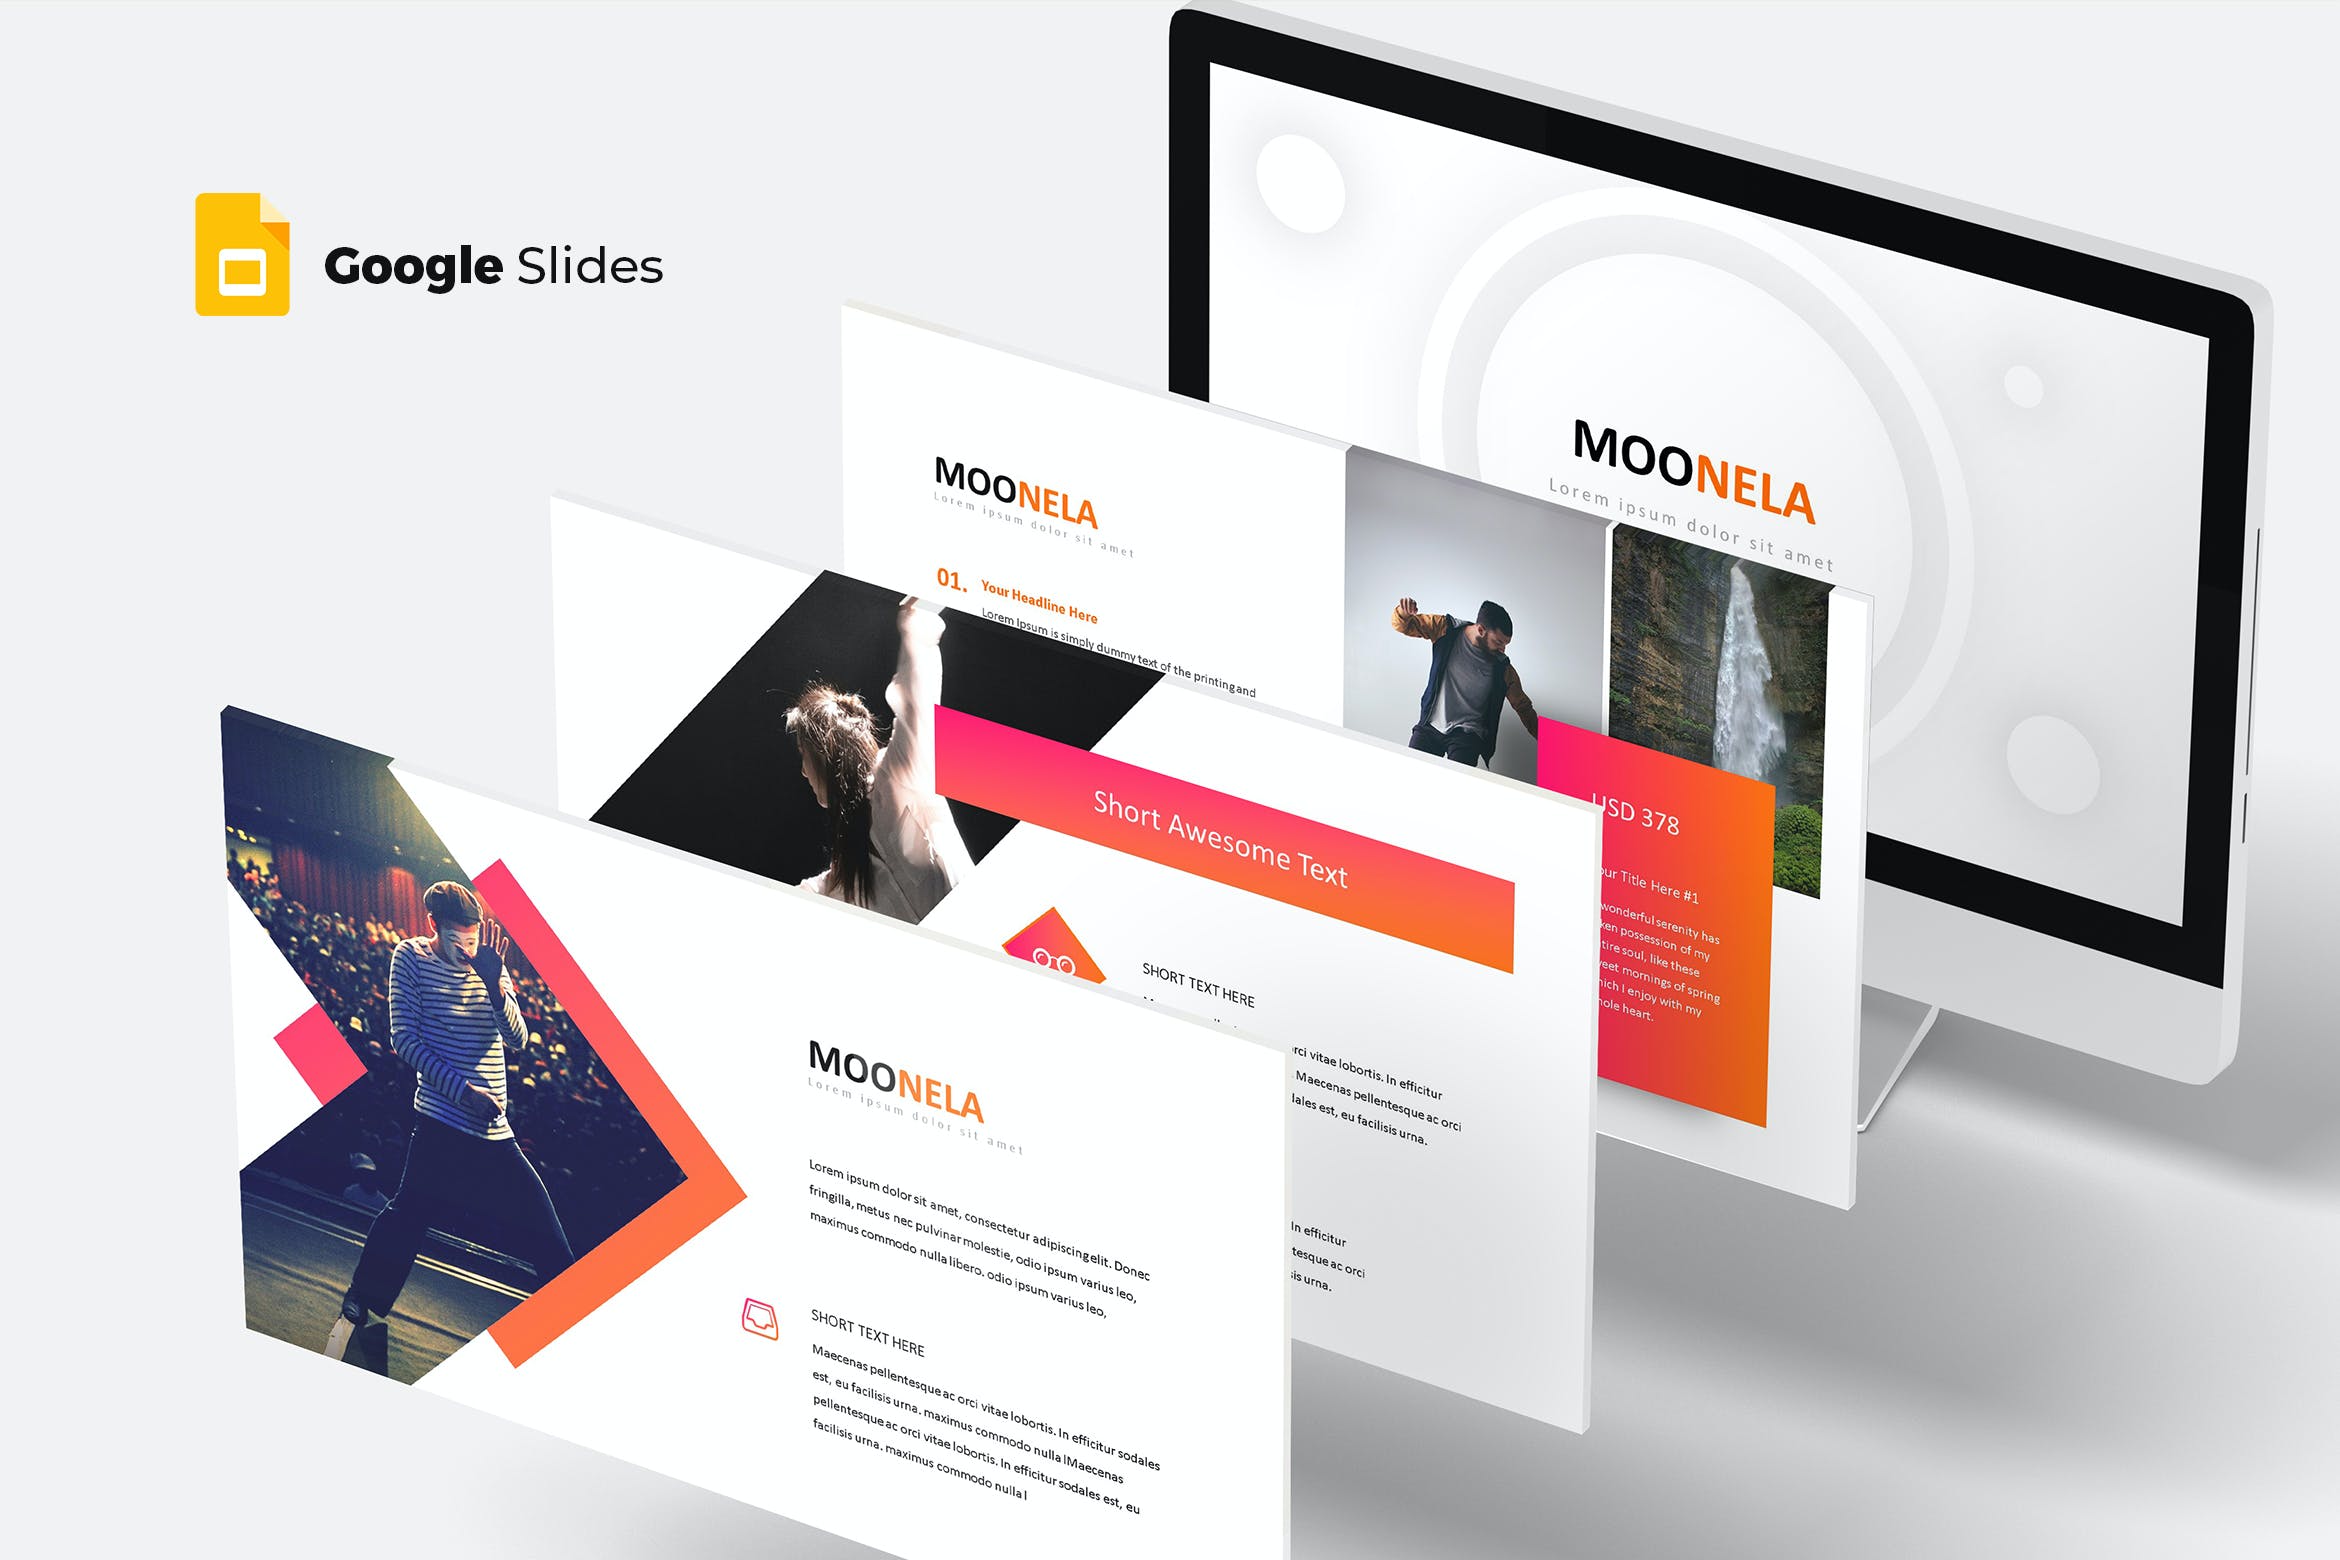 谷歌幻灯片素材时尚现代风格 Moonela – Google Slides Template设计素材模板